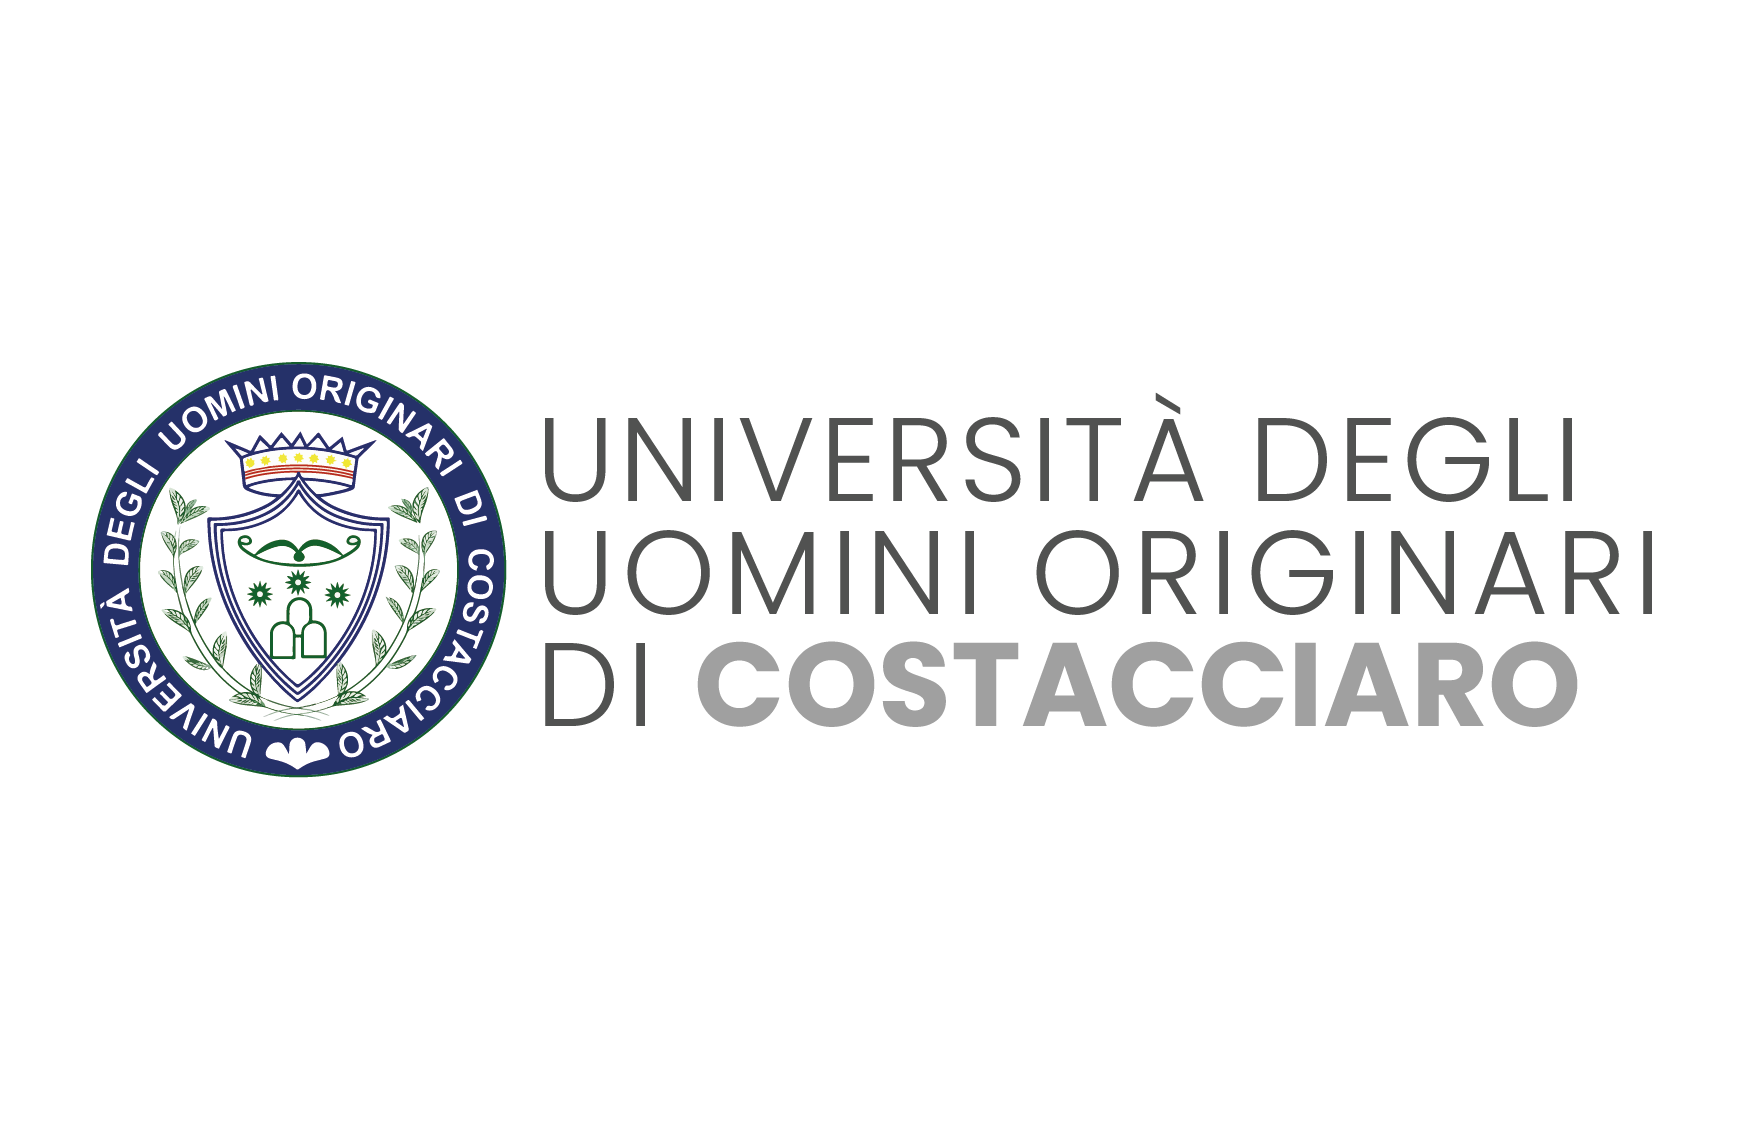 Natale Vergari, presidente dell’Università degli Uomini Originari di Costacciaro, invita tutti a godere delle bellezze del Monte Cucco.